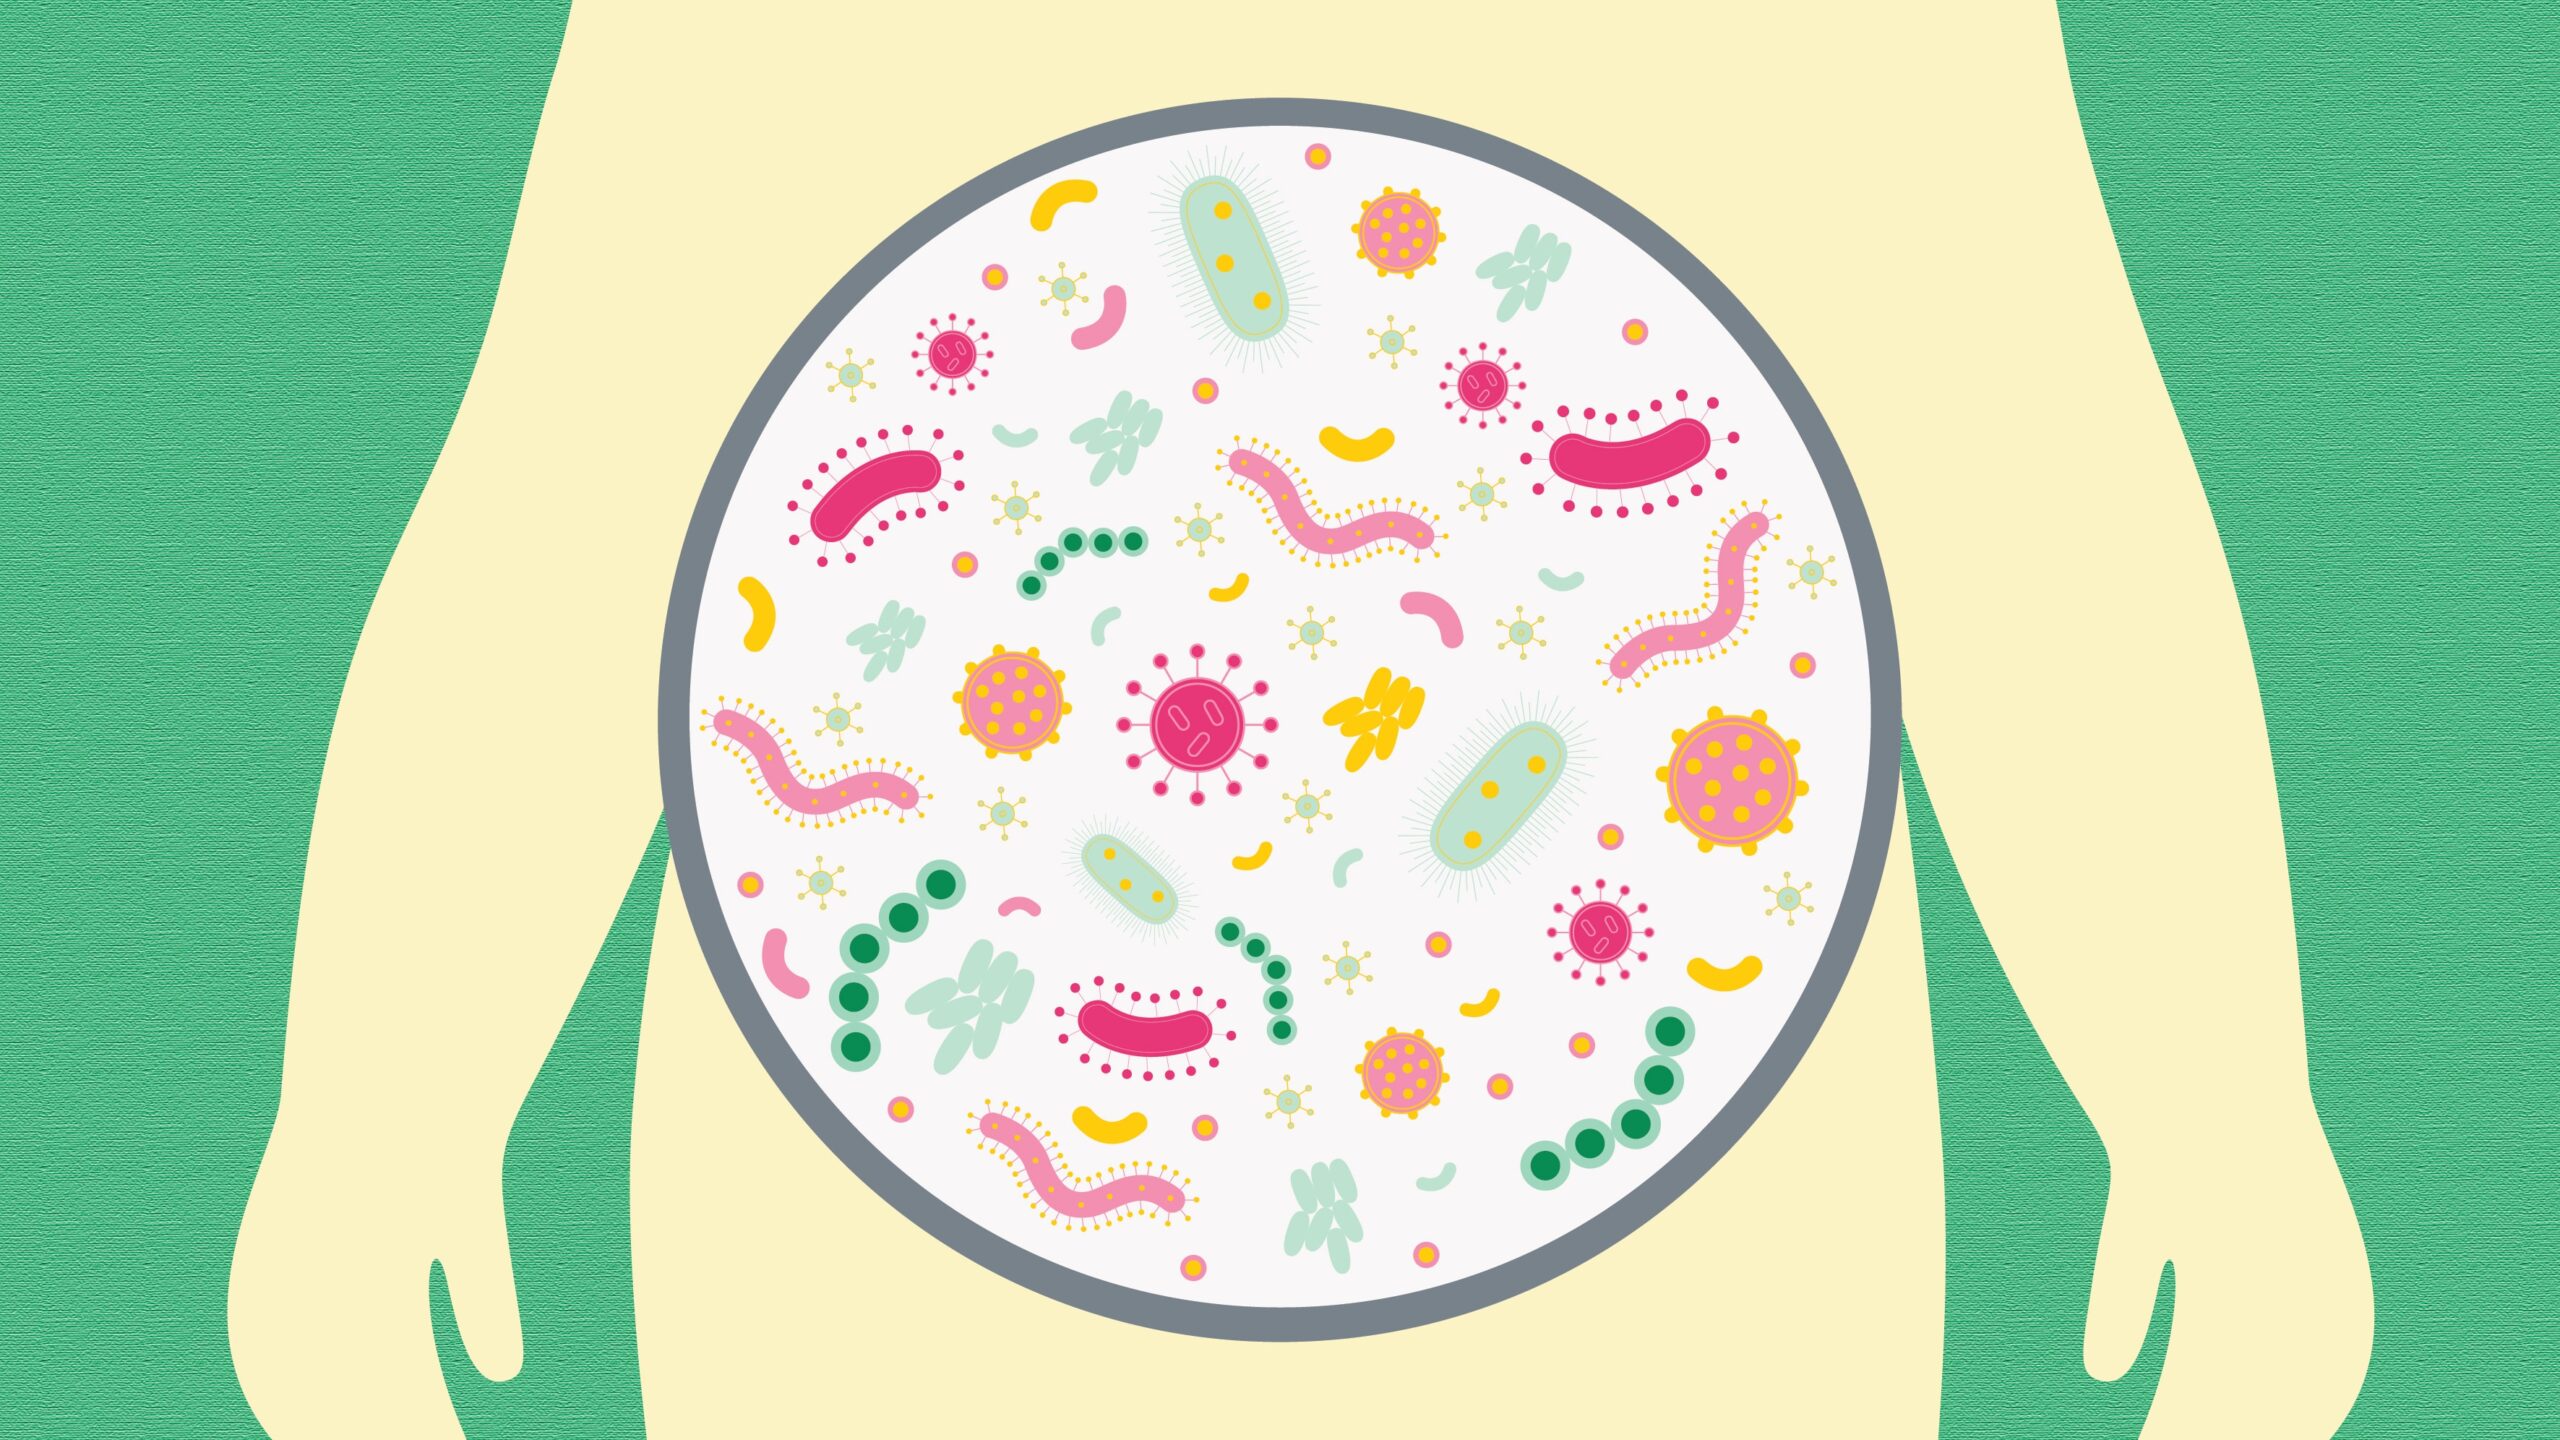 Προβιοτικά ουρολοίμωξη: Ανακαλύφθηκε σύνδεση προβιοτικών και ουρολοιμώξεων